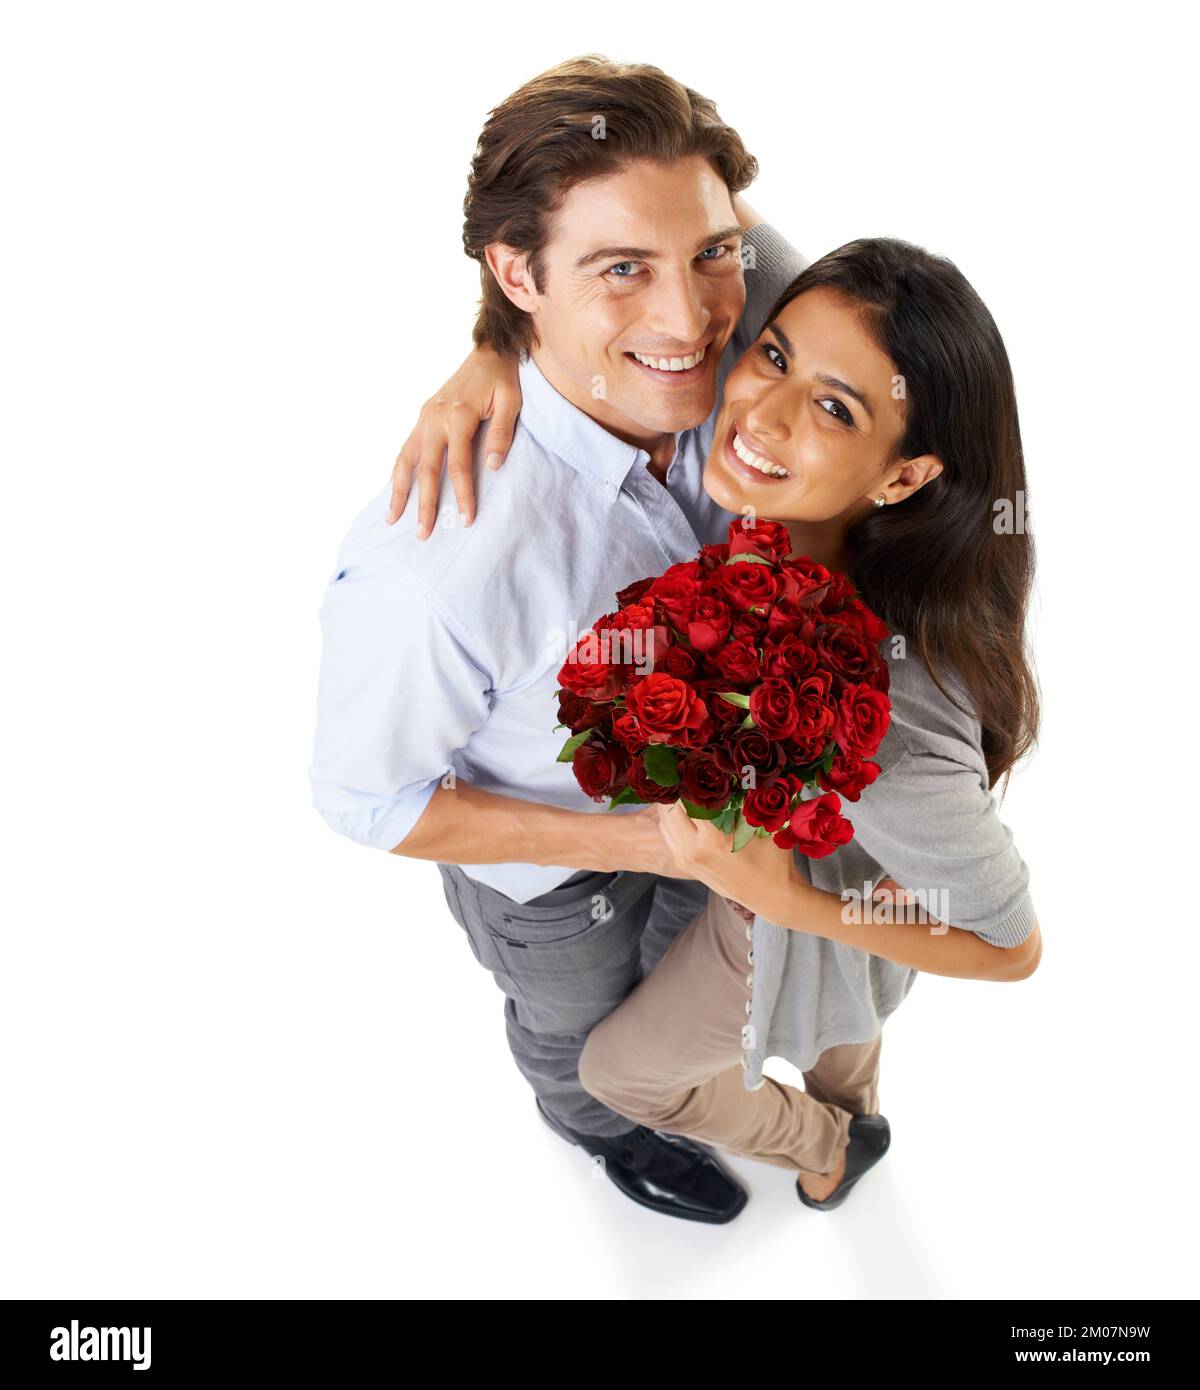 Heureux anniversaire. Portrait en studio grand angle d'un jeune couple embrassant tout en tenant un bouquet de roses isolées sur blanc. Banque D'Images